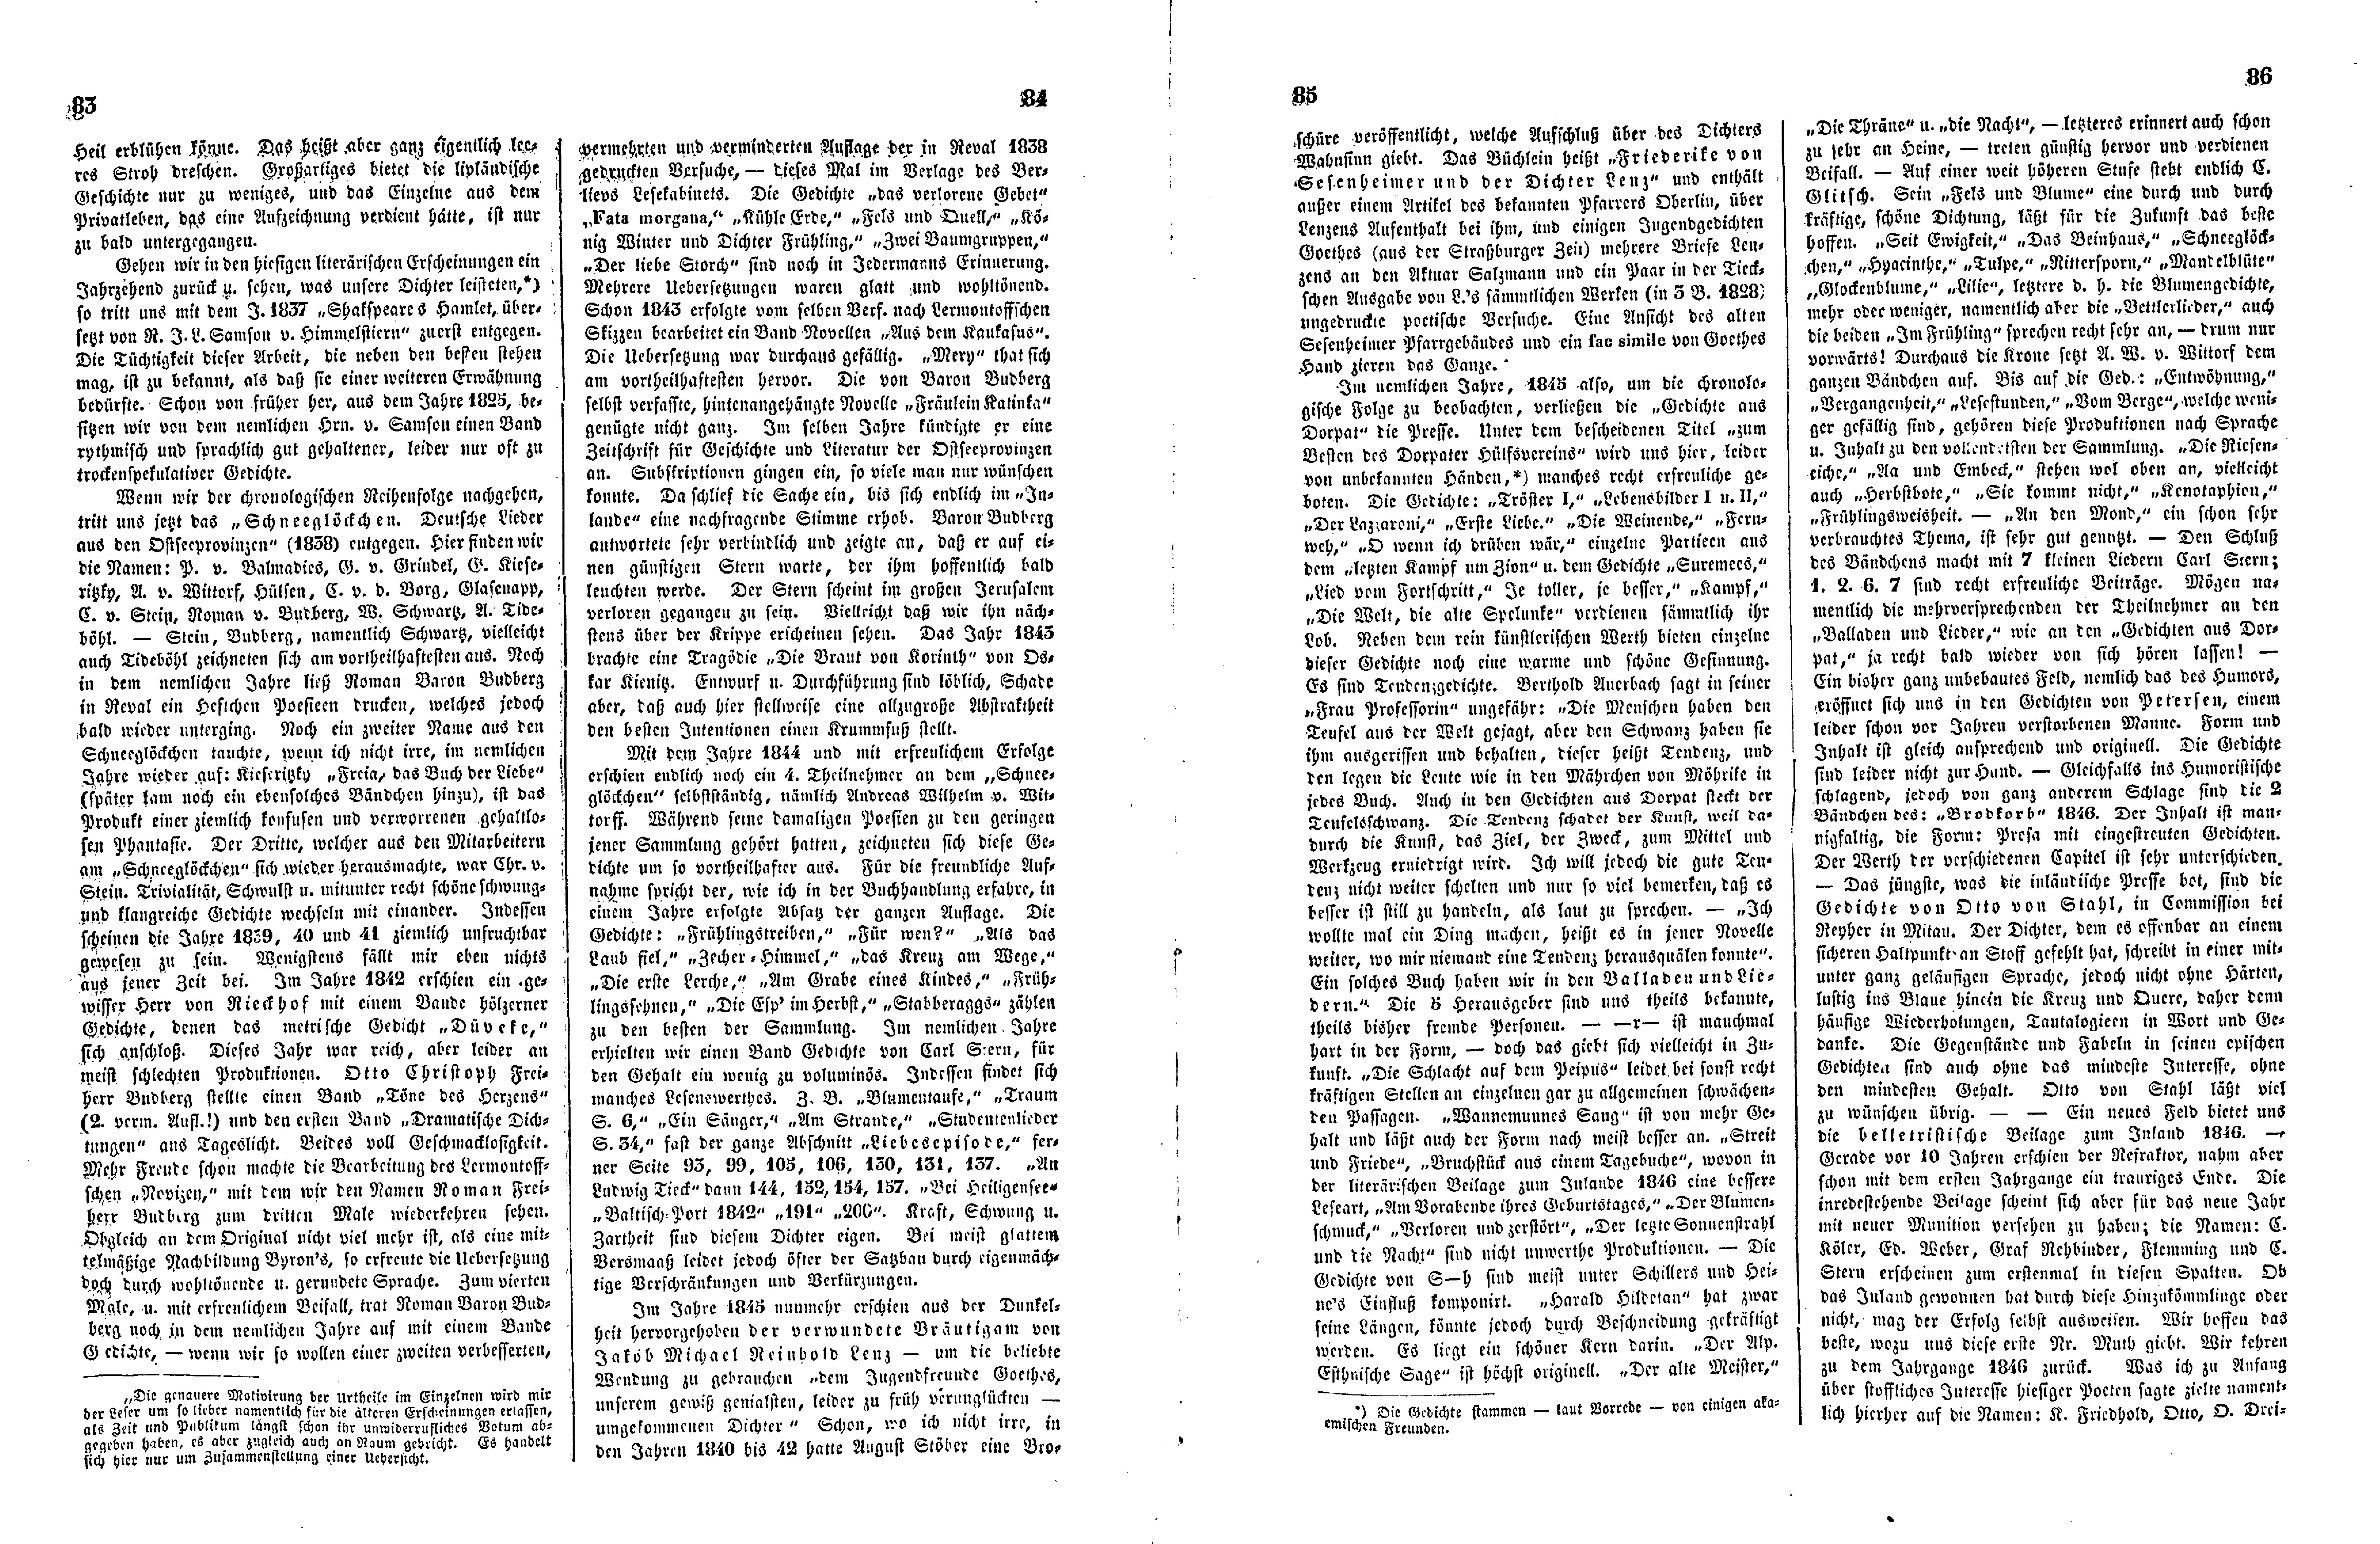 Das Inland [12] (1847) | 26. (83-86) Основной текст